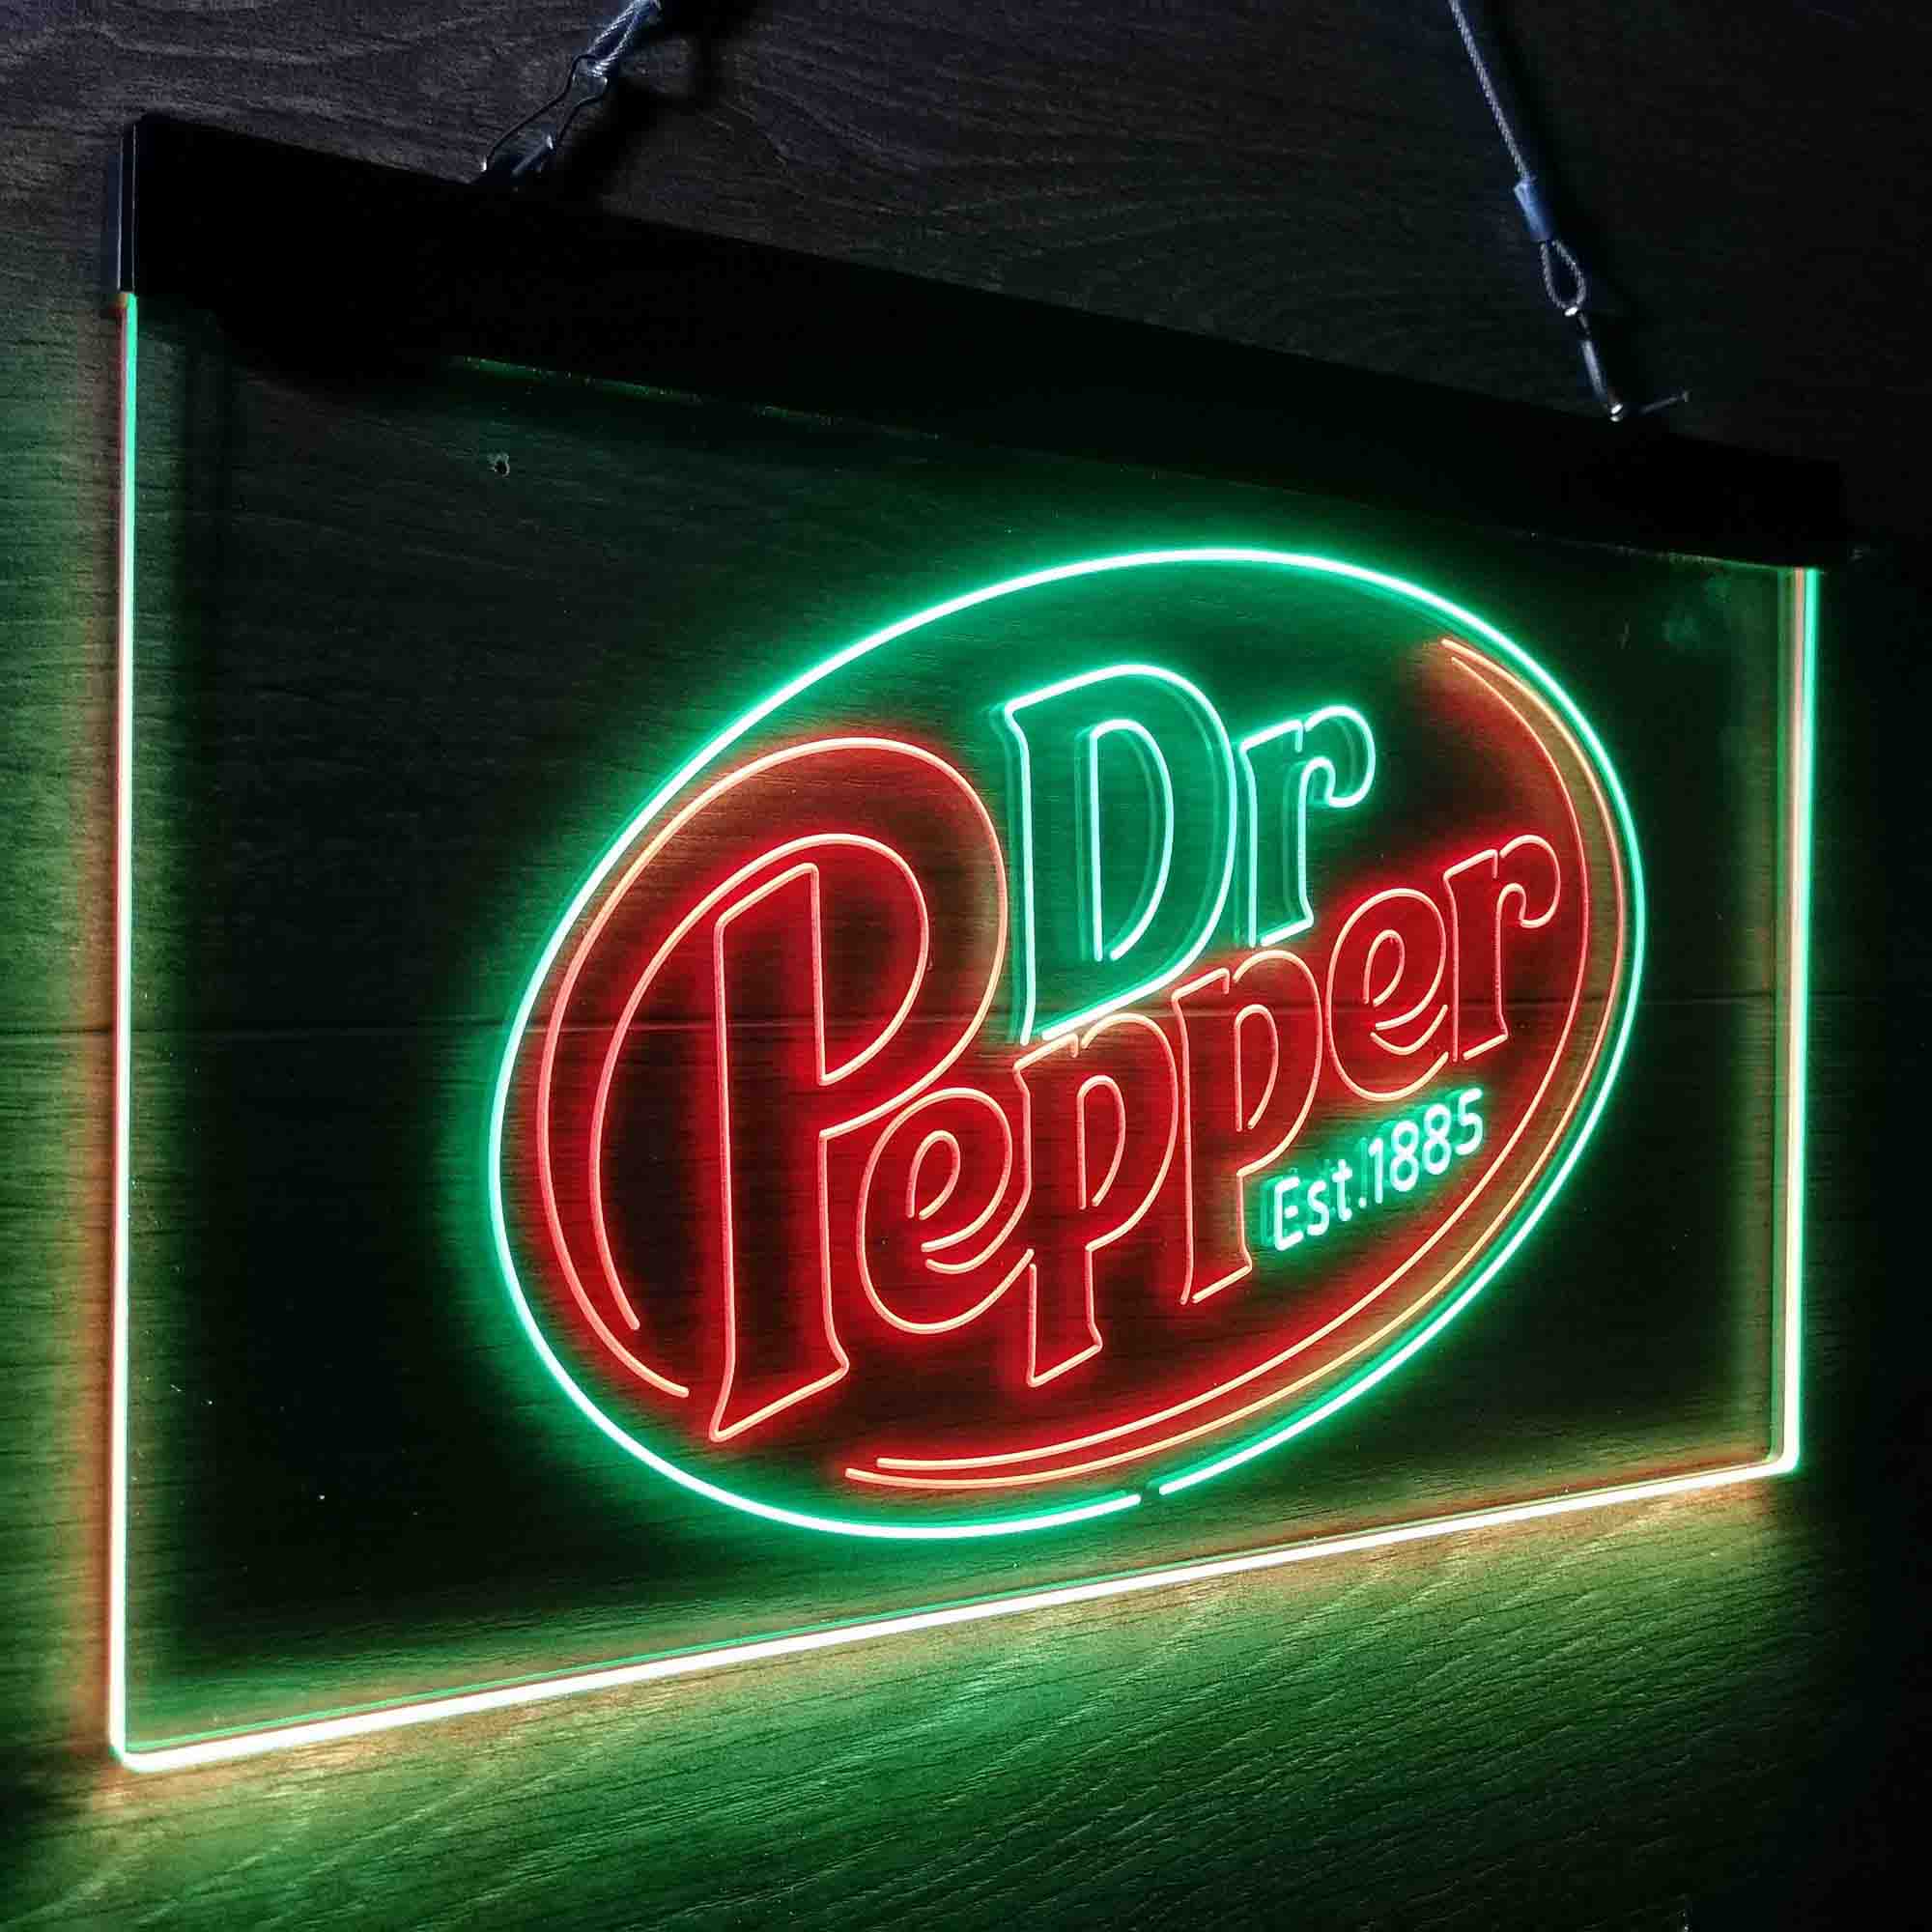 Dr Pepper Est 1885 LED Neon Sign